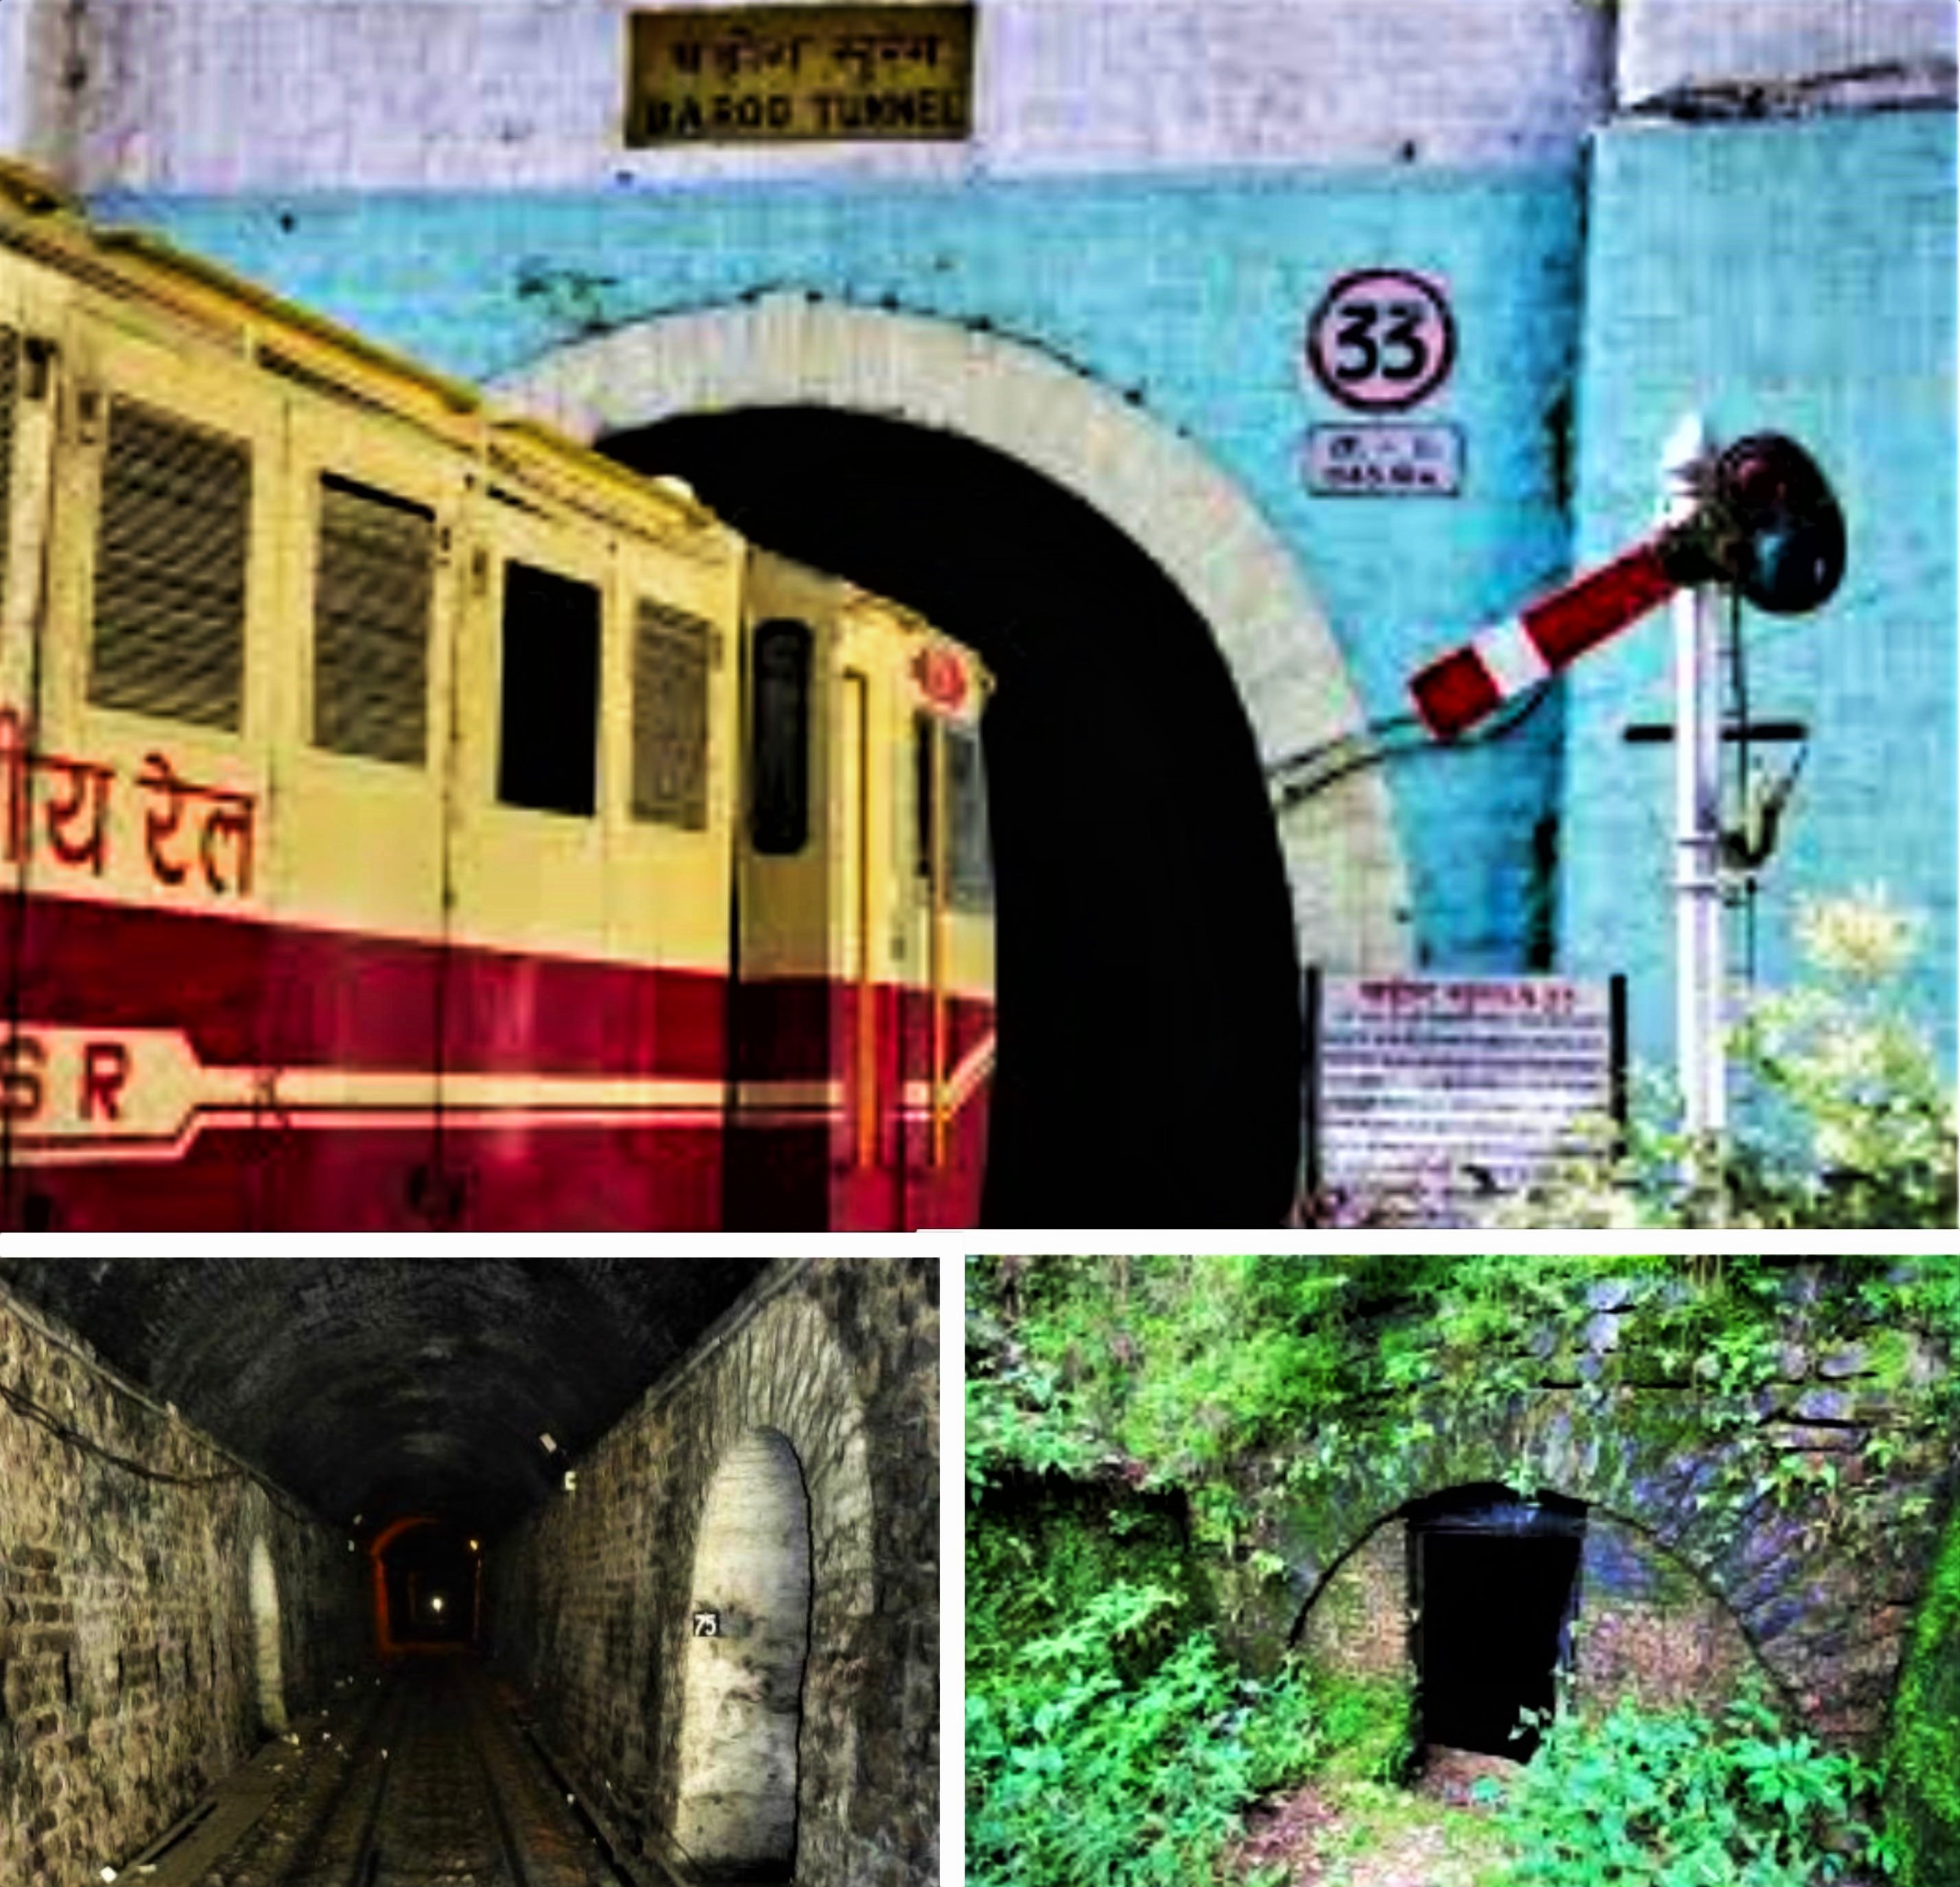 Barog Tunnel